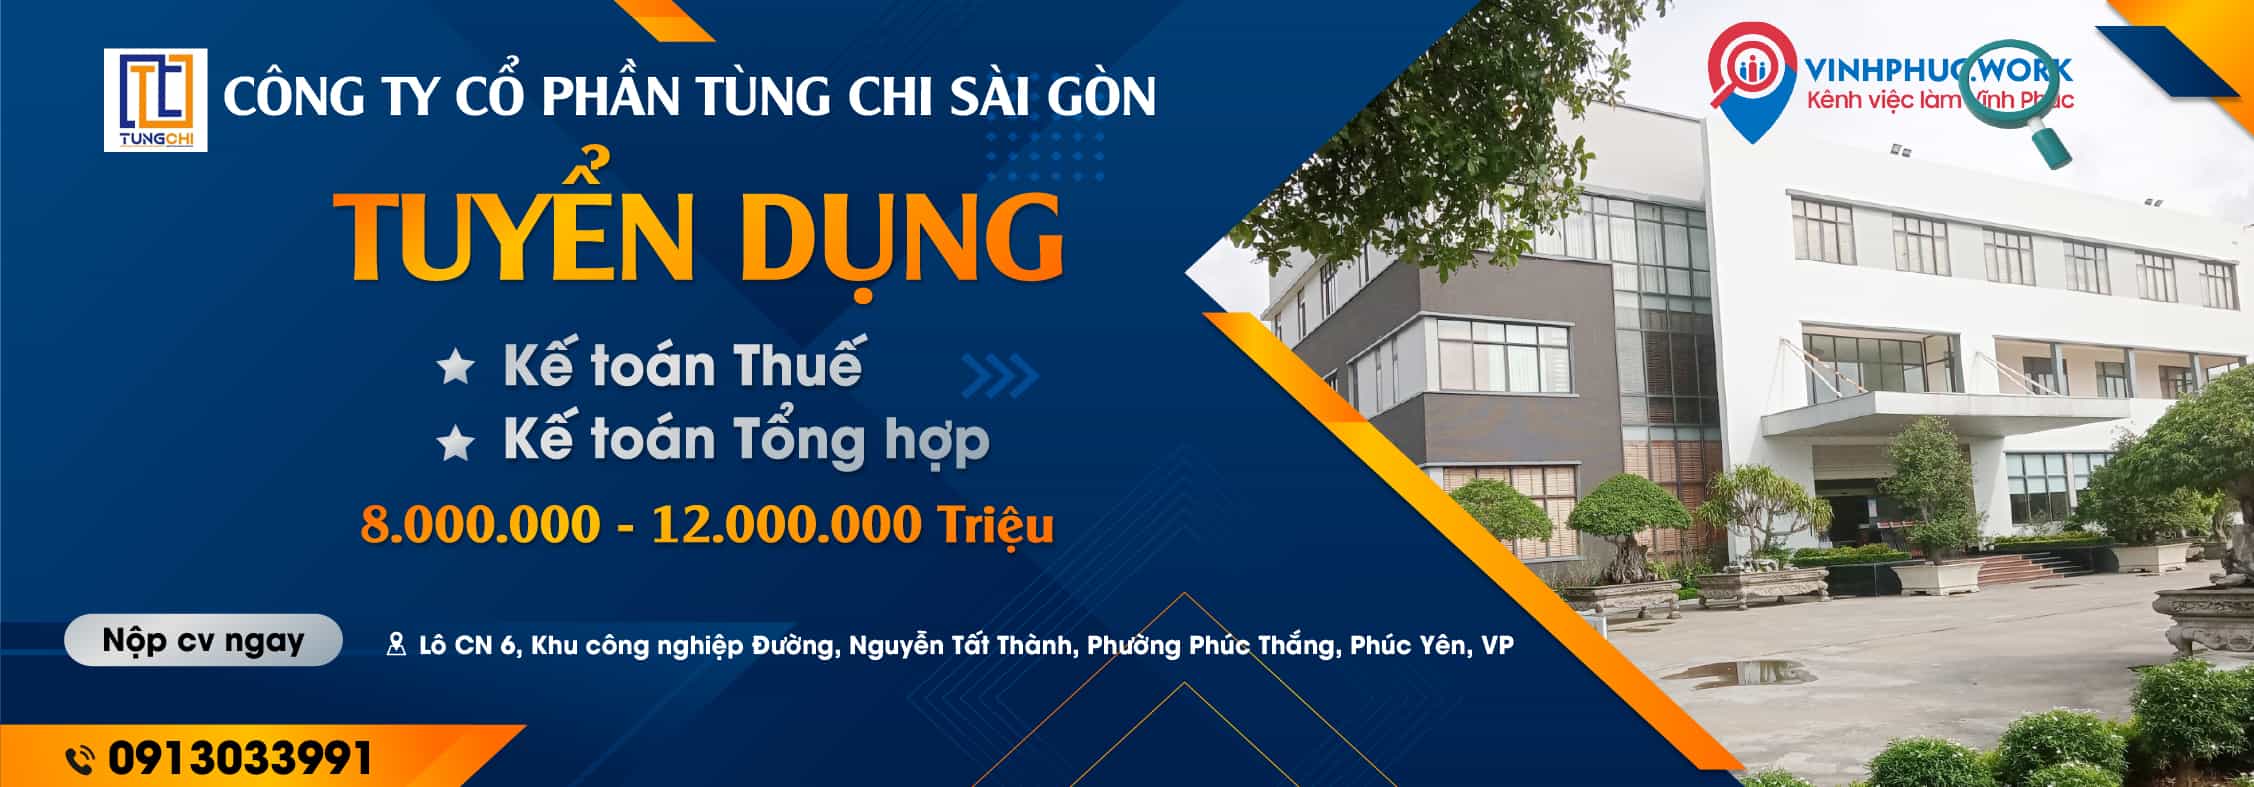 Cong Ty Co Phan Tung Chi Sai Gon Thong Bao Tuyen Dung Ke Toan Thue Ke Toan Tong Hop 6